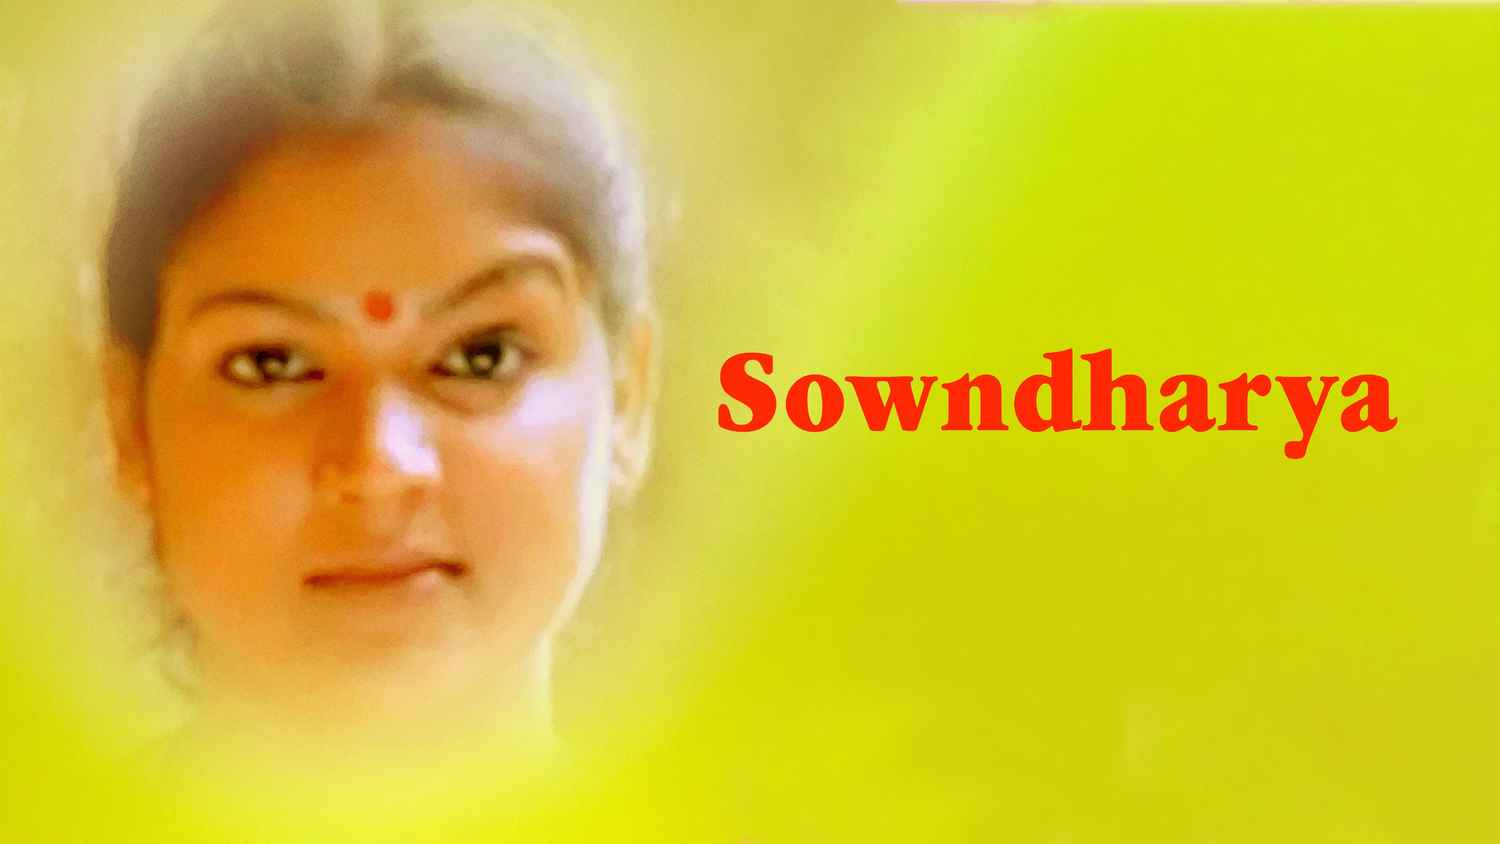 Sowndharya